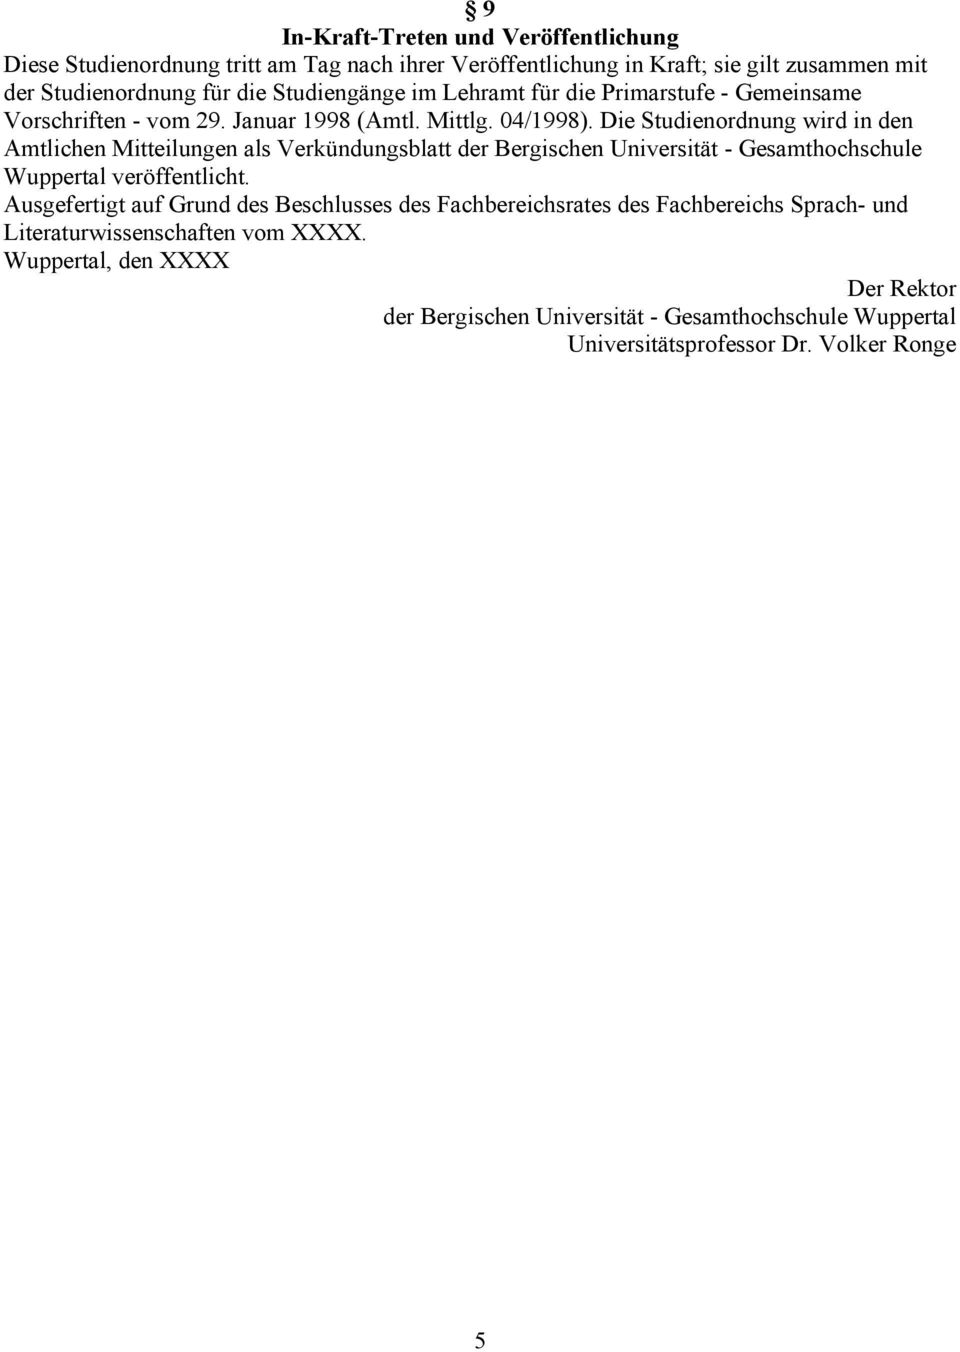 Die Studienordnung wird in den Amtlichen Mitteilungen als Verkündungsblatt der Bergischen Universität - Gesamthochschule Wuppertal veröffentlicht.